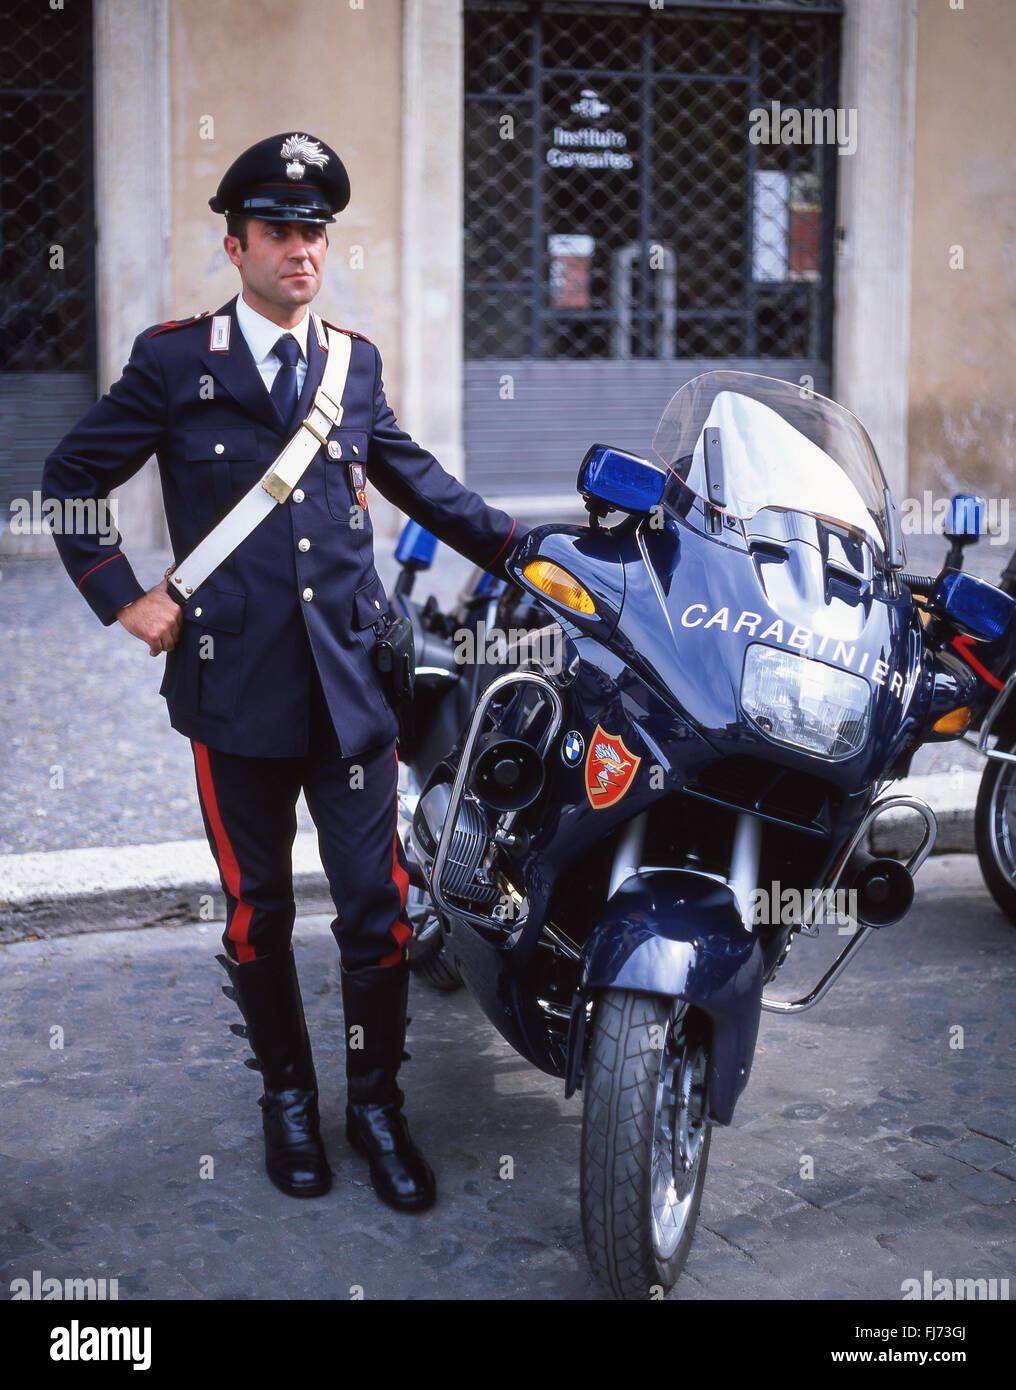 Poliziotto italiano (Carabinieri) in piedi in moto, Roma (Roma), Regione Lazio, Italia Foto Stock